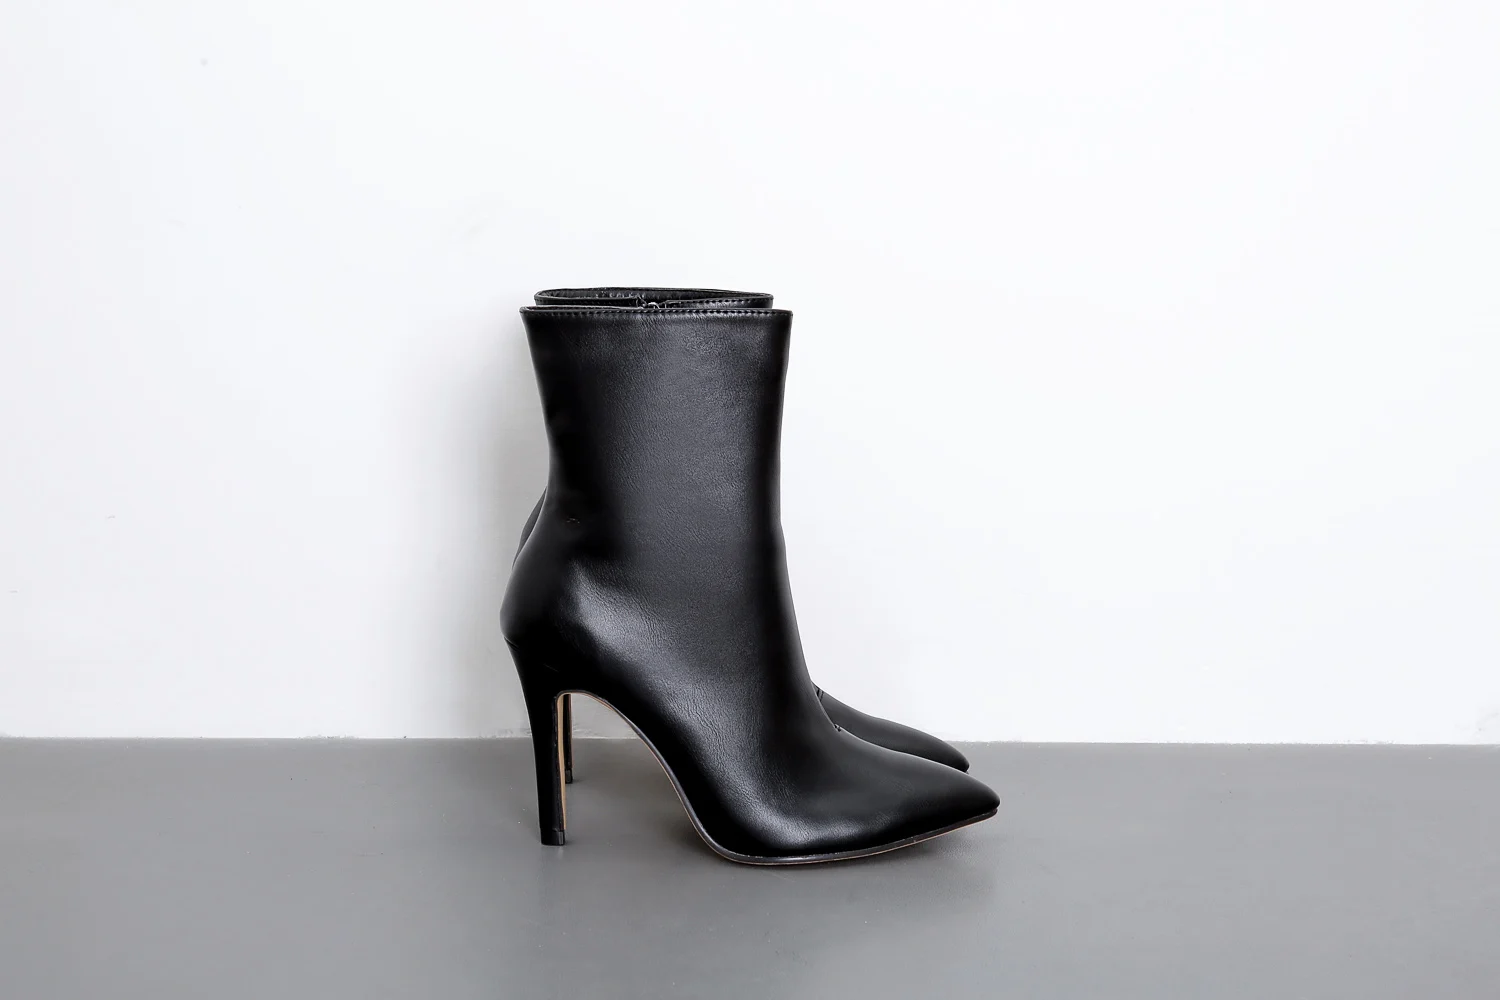 NIUFUNI/Модные ботильоны; пикантные женские туфли-лодочки на высоком каблуке с острым носком; модные ботинки из искусственной кожи; осень года; женская обувь; Цвет черный, белый